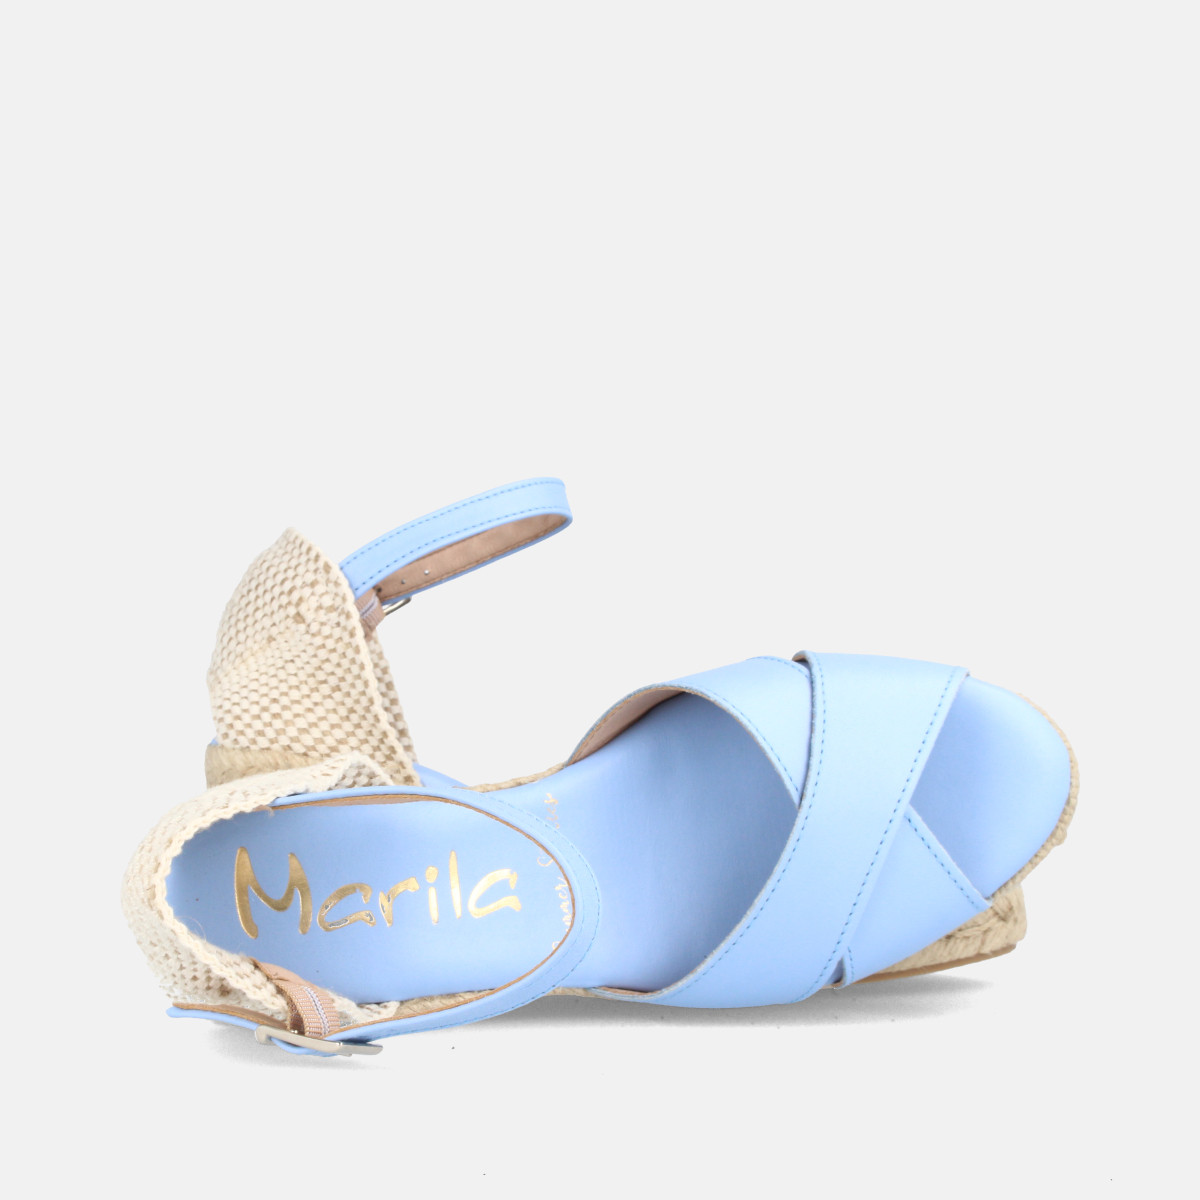 Sandales confortables compensées à bandes croisées - Bleu - Marila